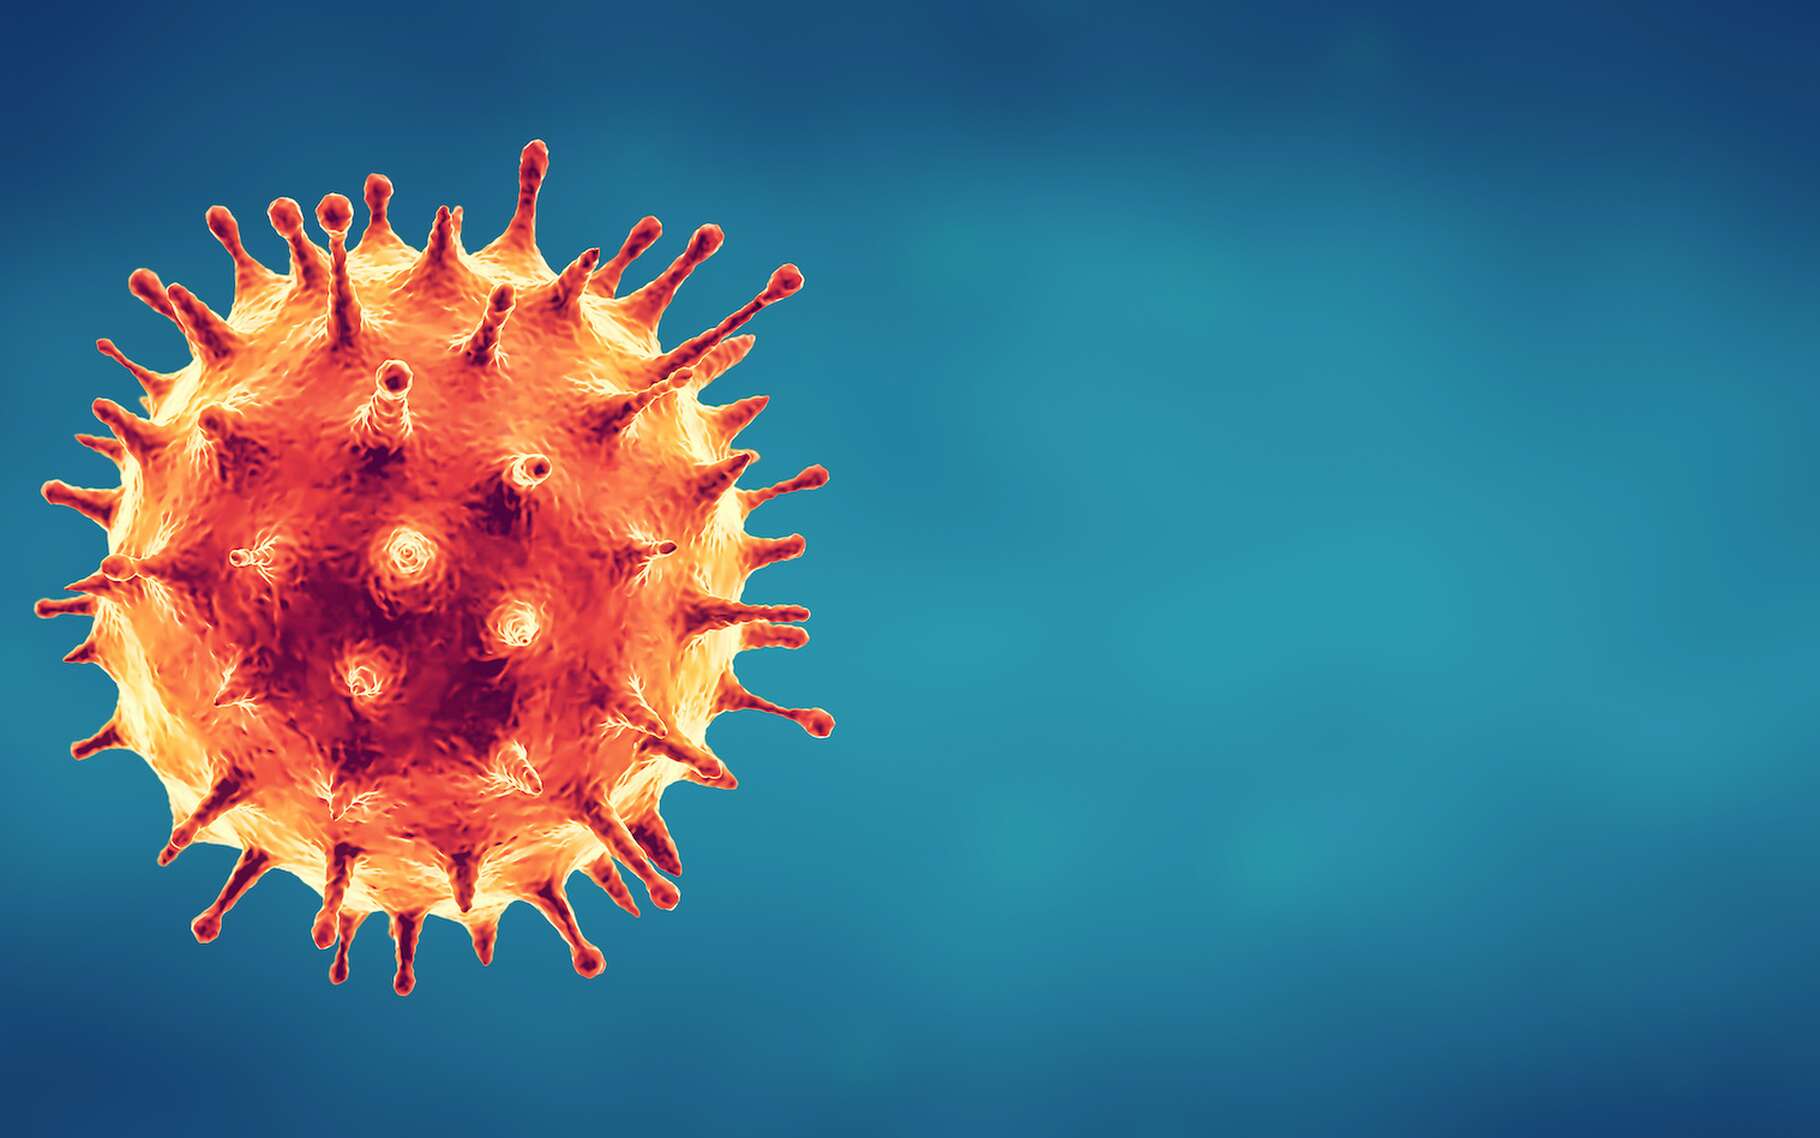 Le coronavirus SARS-CoV-2 responsable de la pandémie de Covid-19, on peut le retrouver dans les eaux usées. Ou en tout cas, des traces de son génome. © Feydzhet Shabanov, Adobe Stock